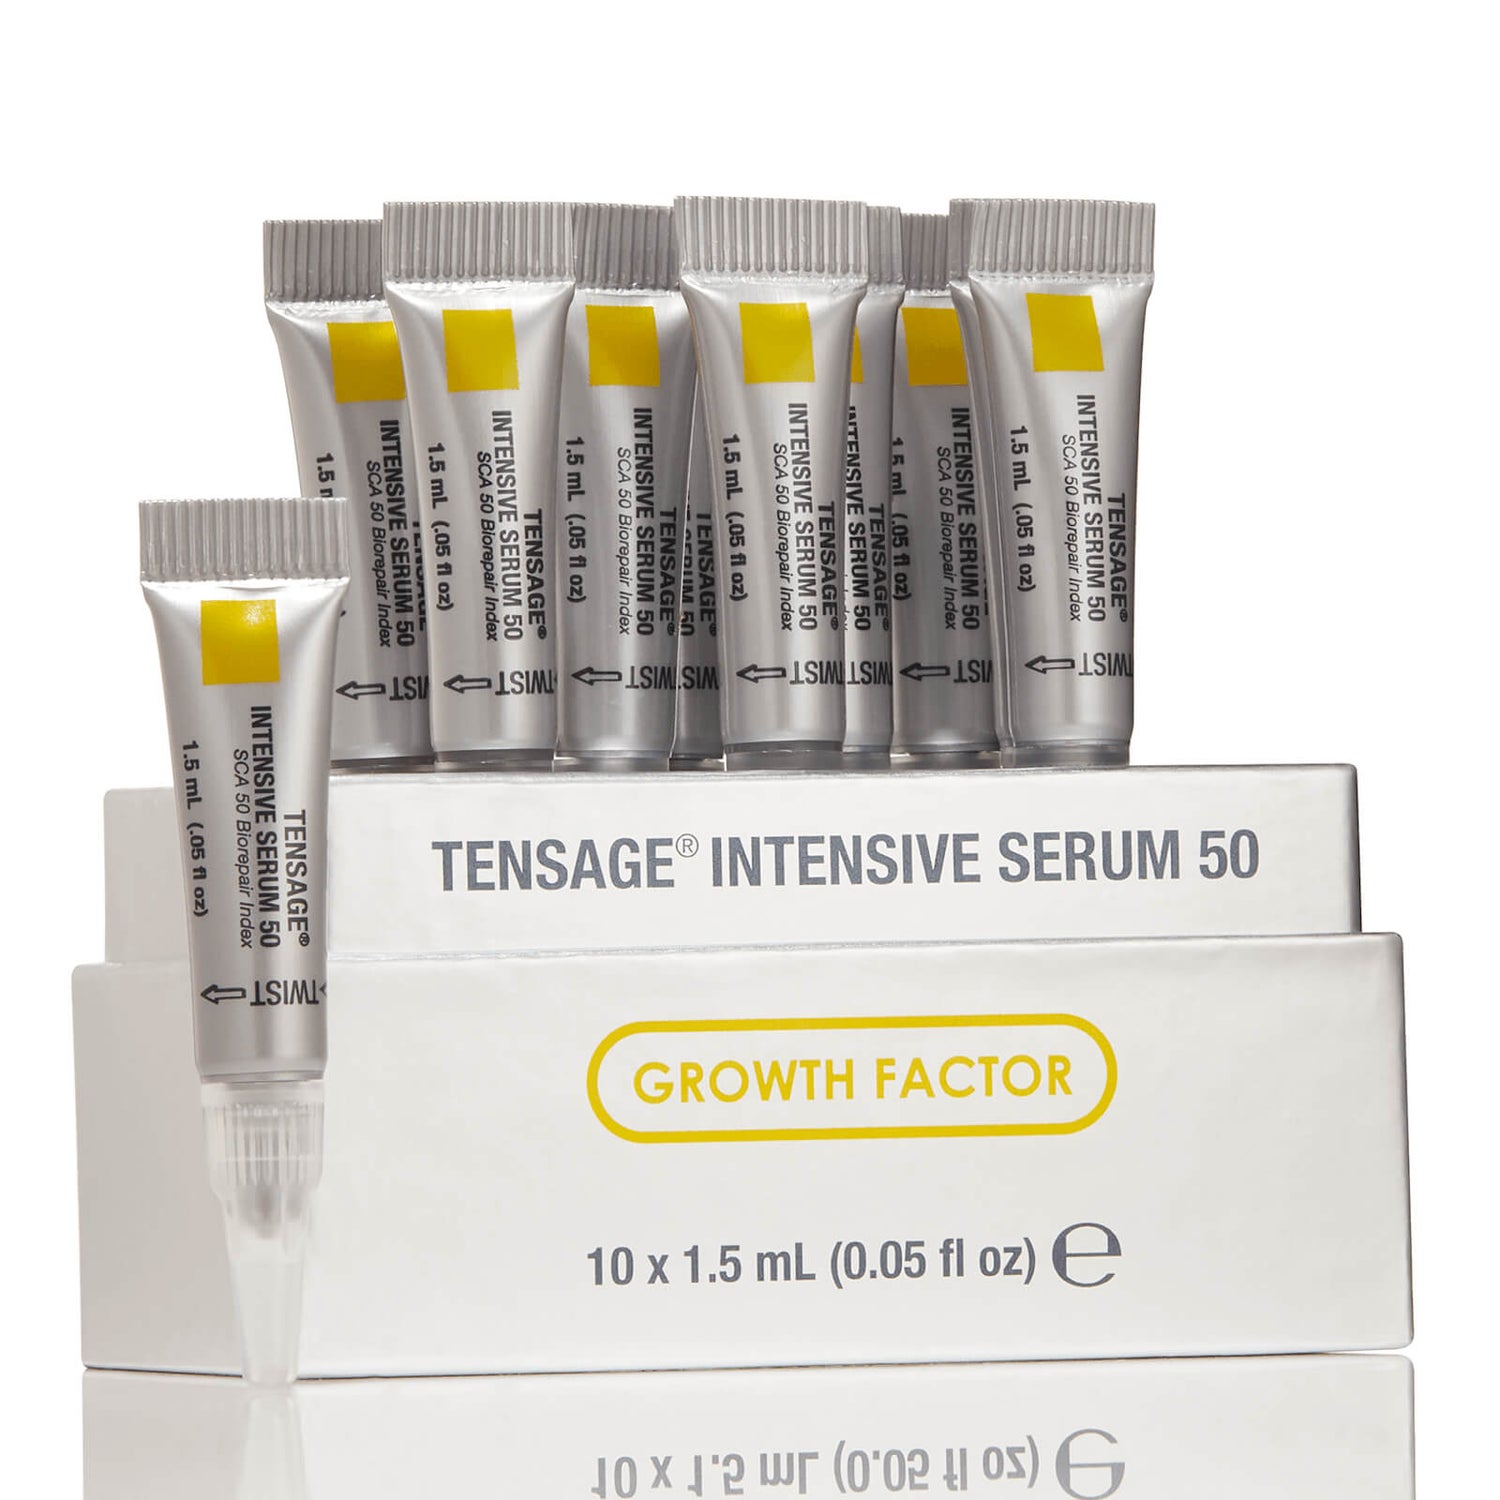 Biopelle Tensage Intensive Serum 50